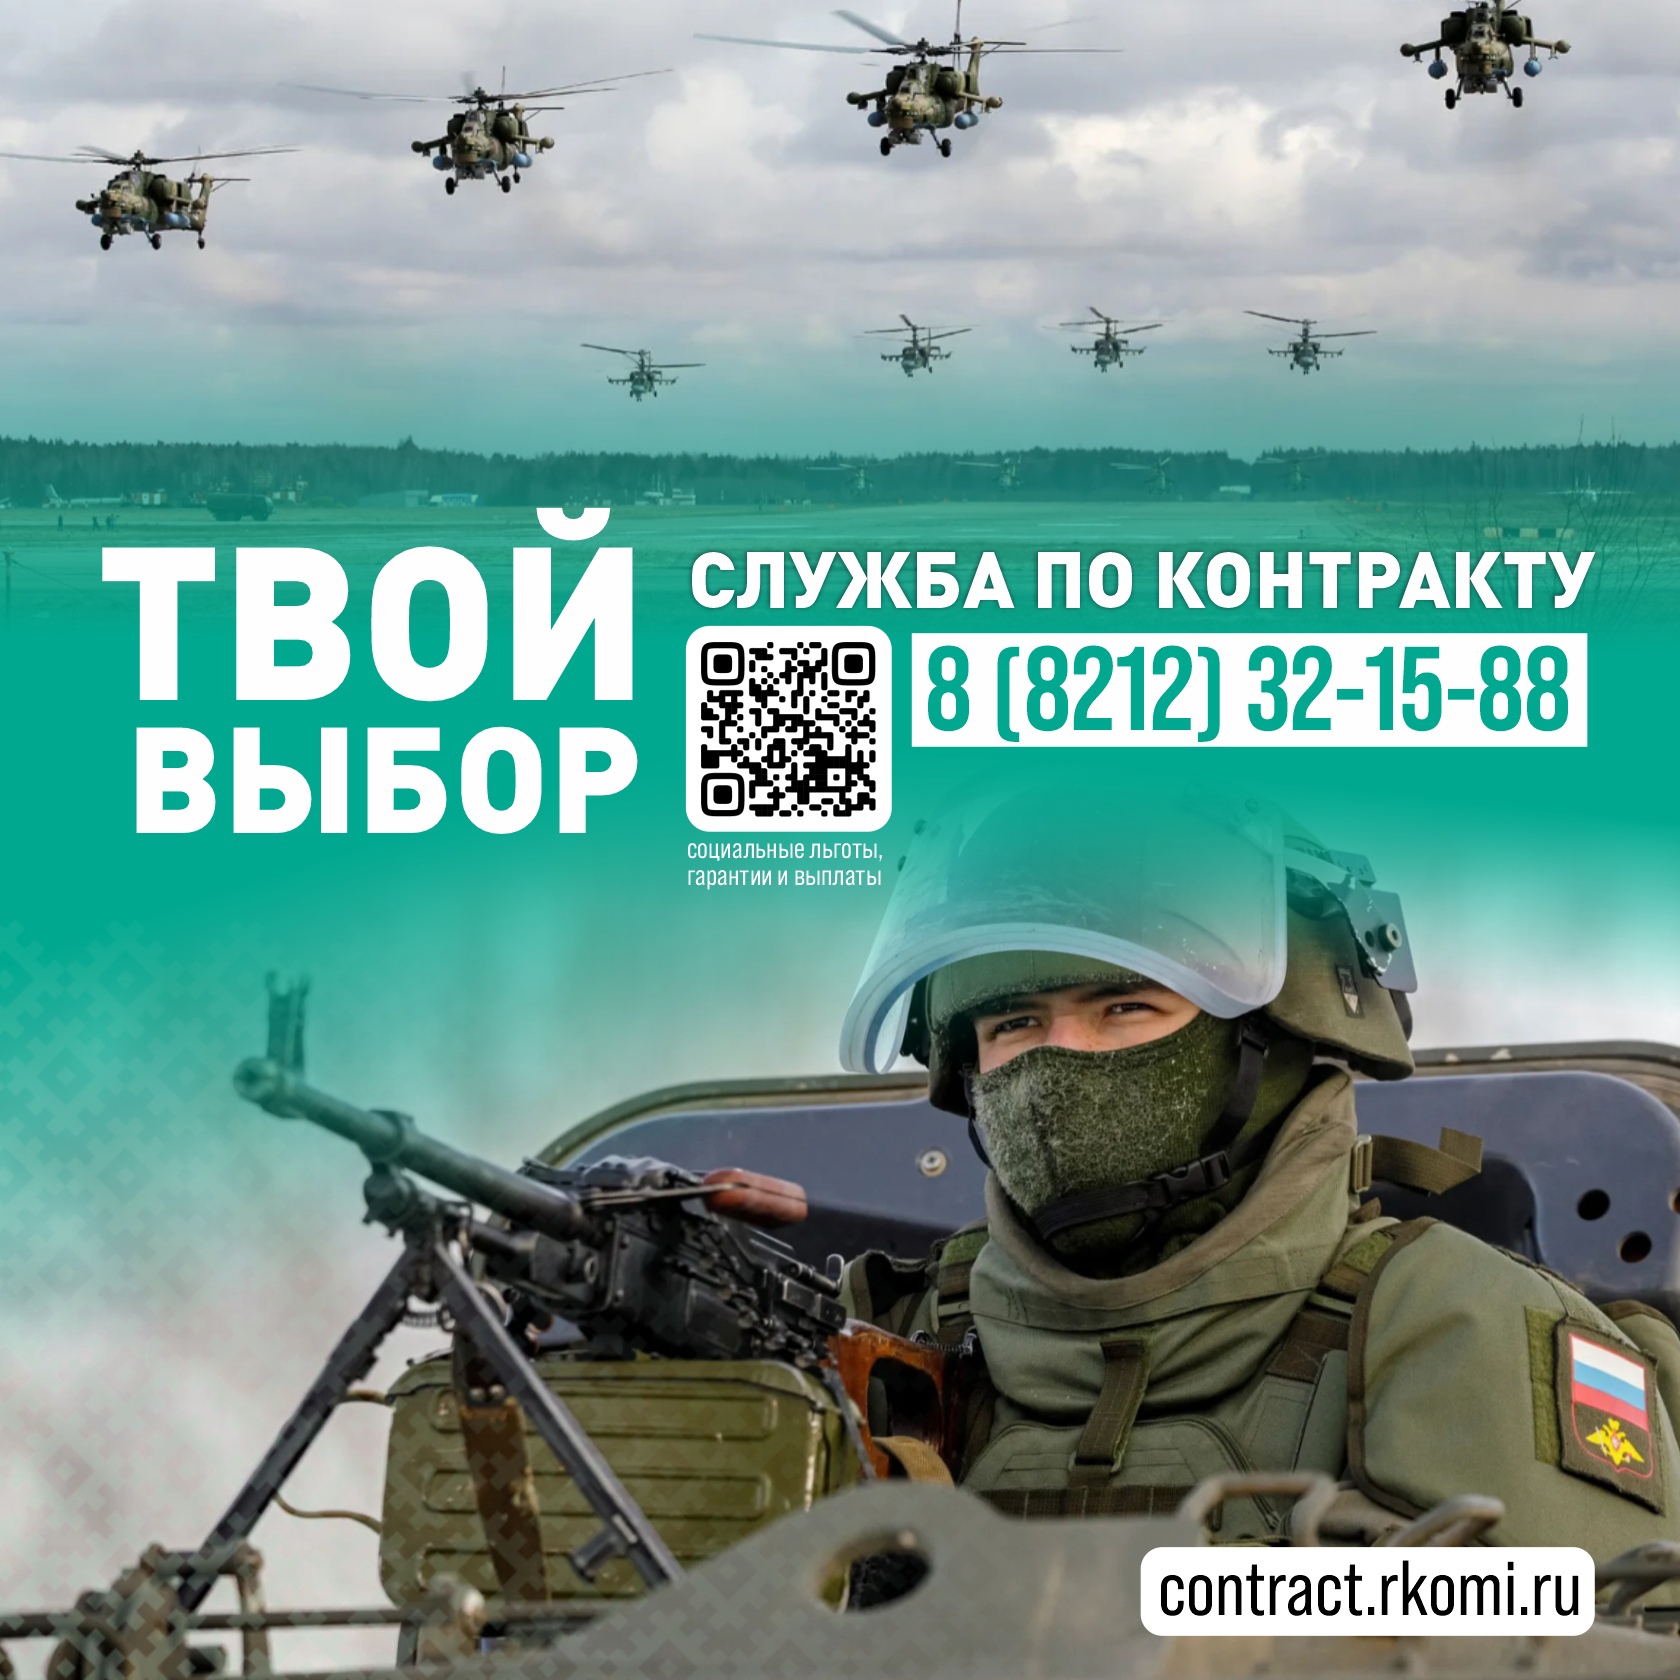 Республика Коми платит до 1 млн 120 тысяч рублей заключившим контракт о прохождении военной службы.